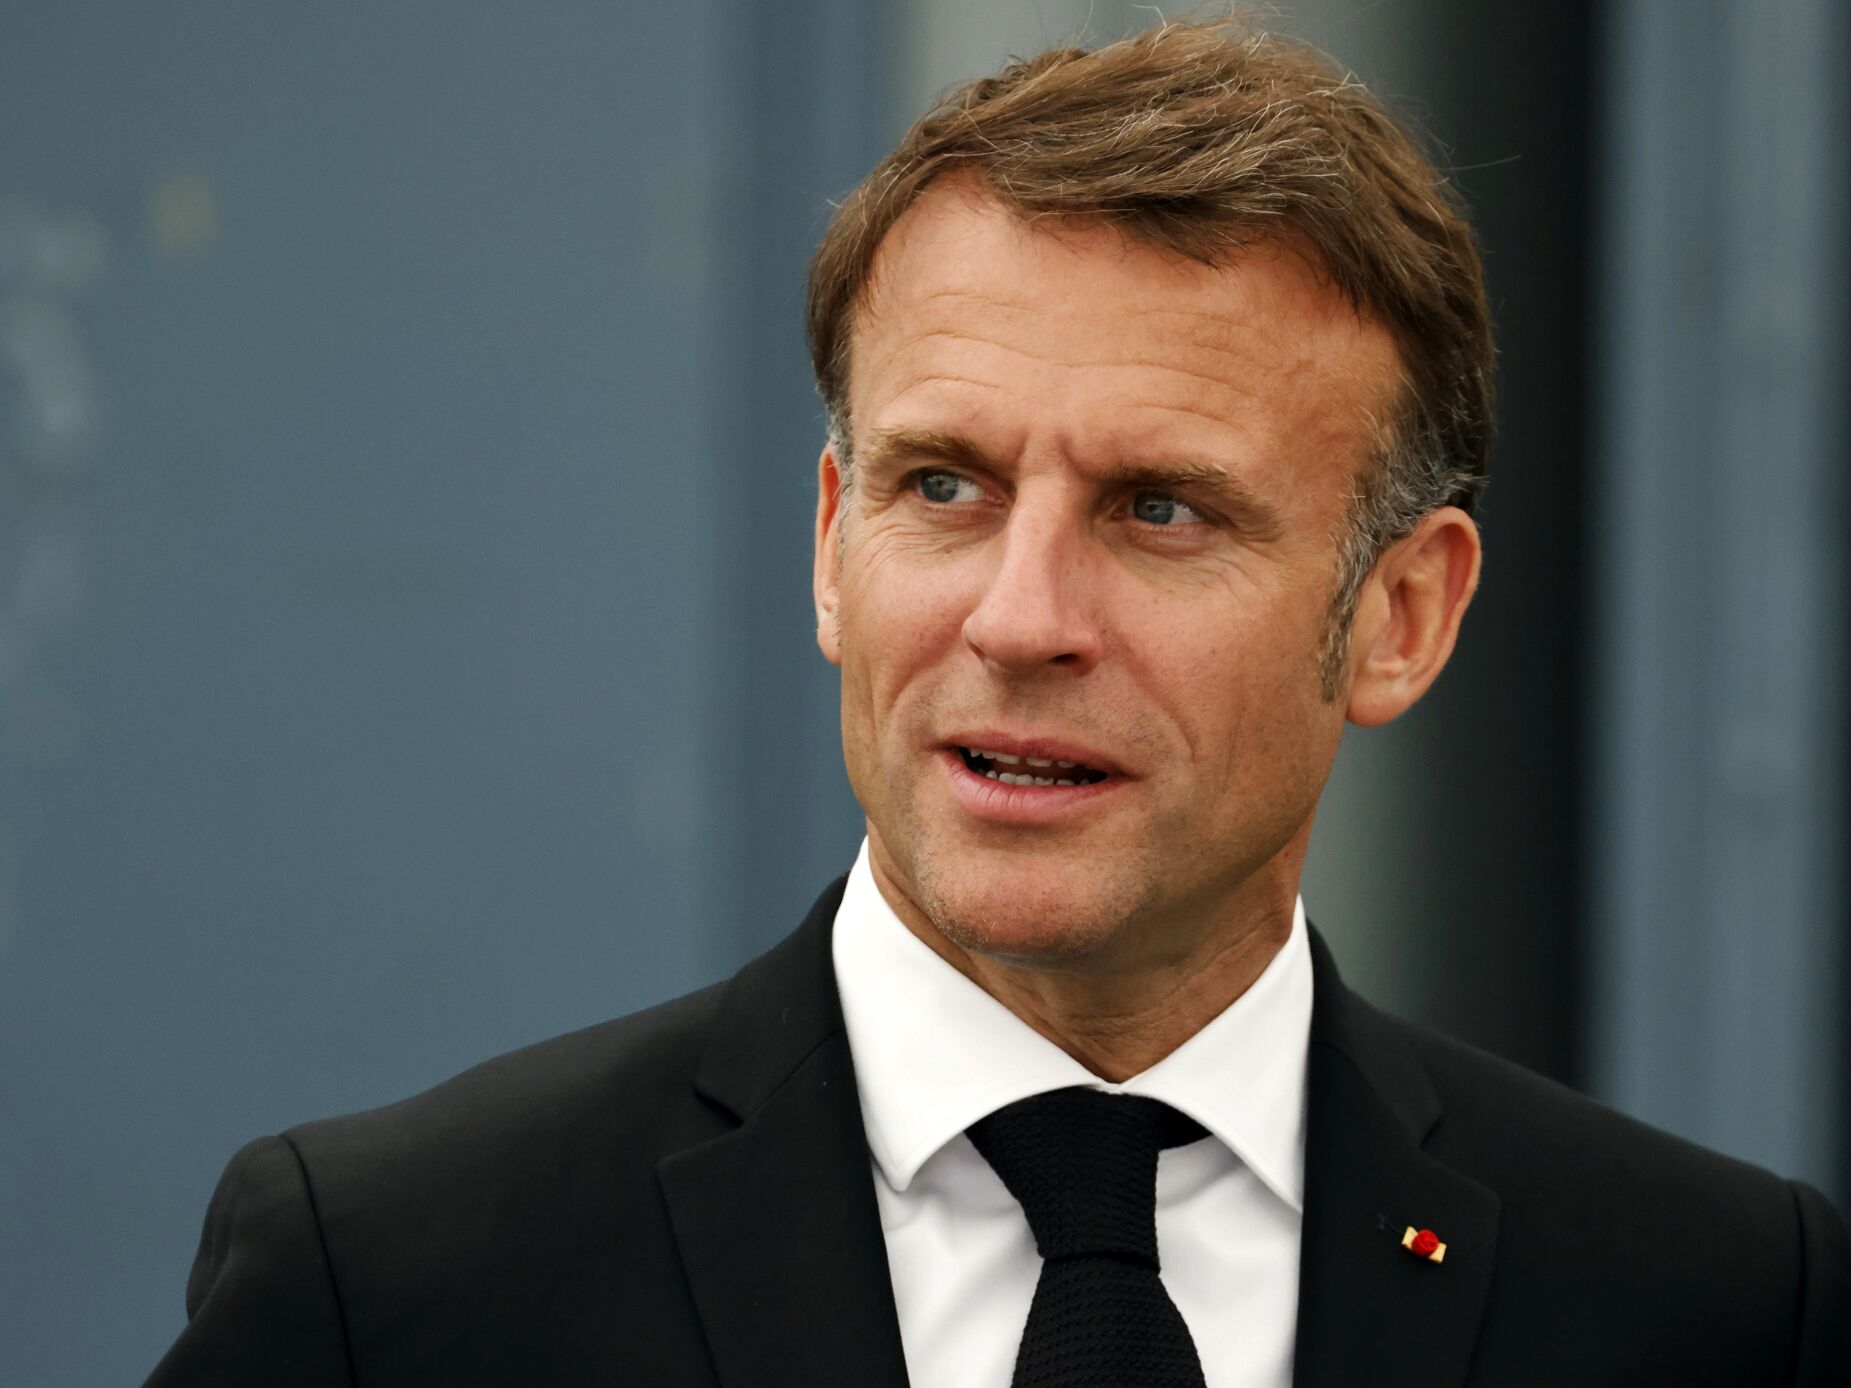 Macron descarta demissão “seja qual for o resultado” de eleições antecipadas